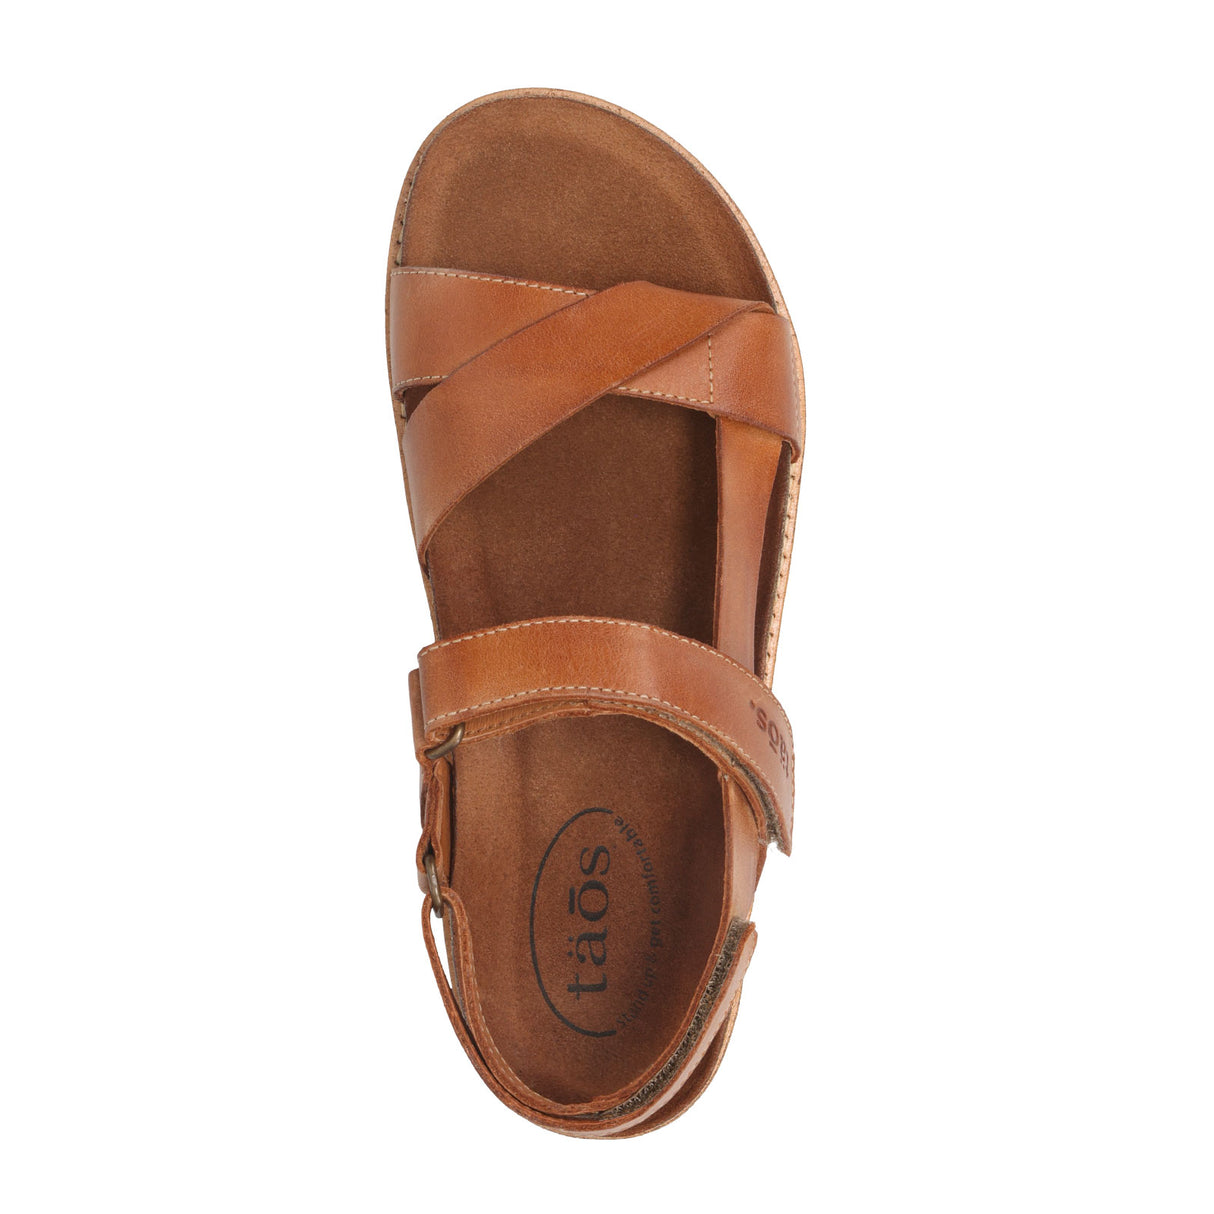 Taos Sideways Backstrap Sandal (Women) - Caramel Sandals - Backstrap - The Heel Shoe Fitters